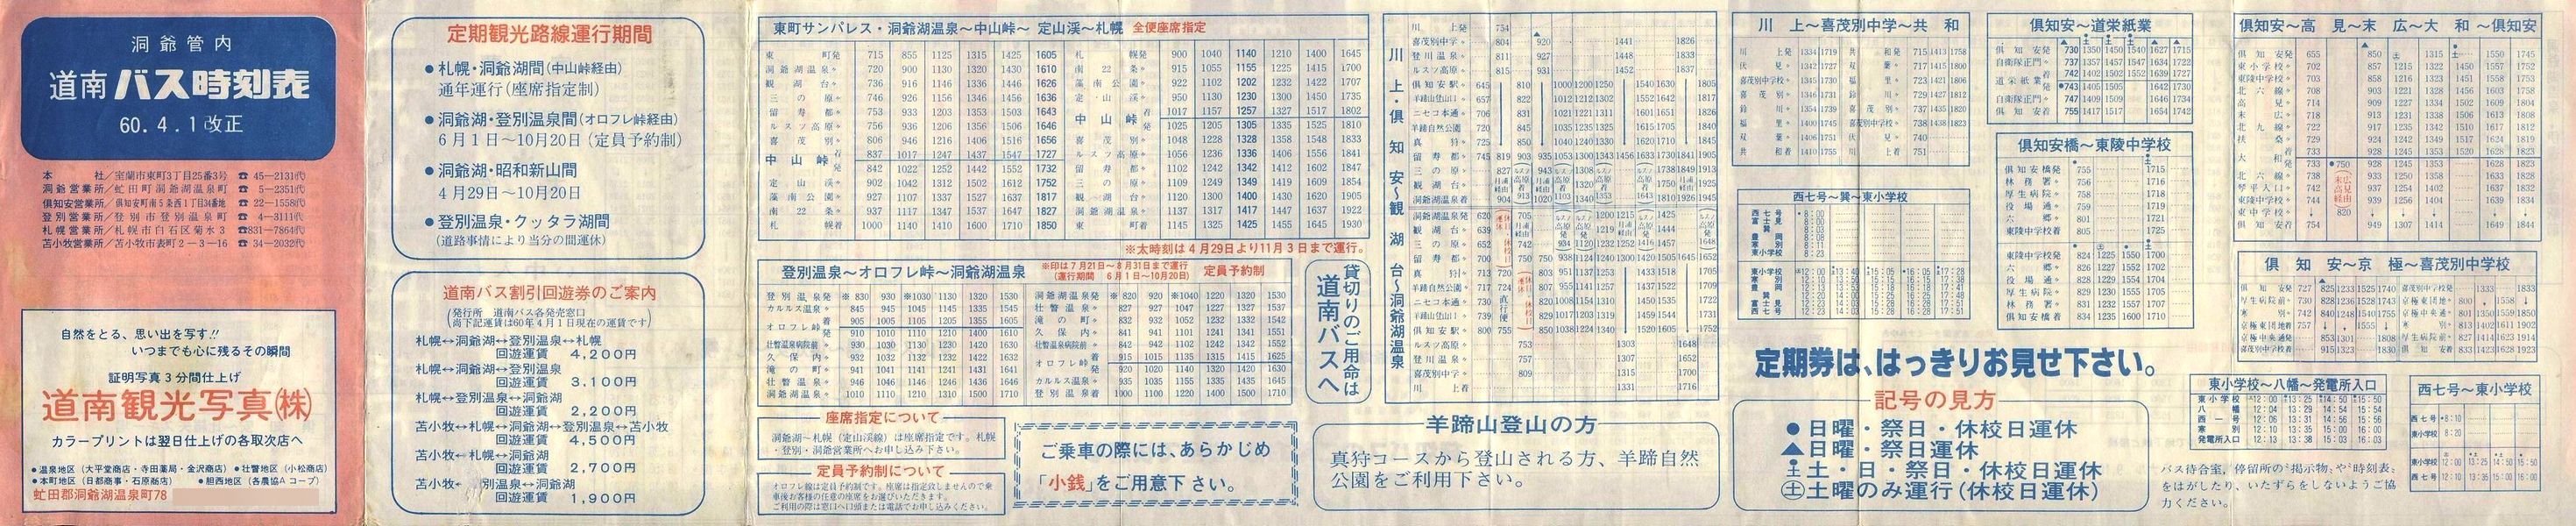 1985-04-01改正_道南バス_洞爺管内時刻表表面